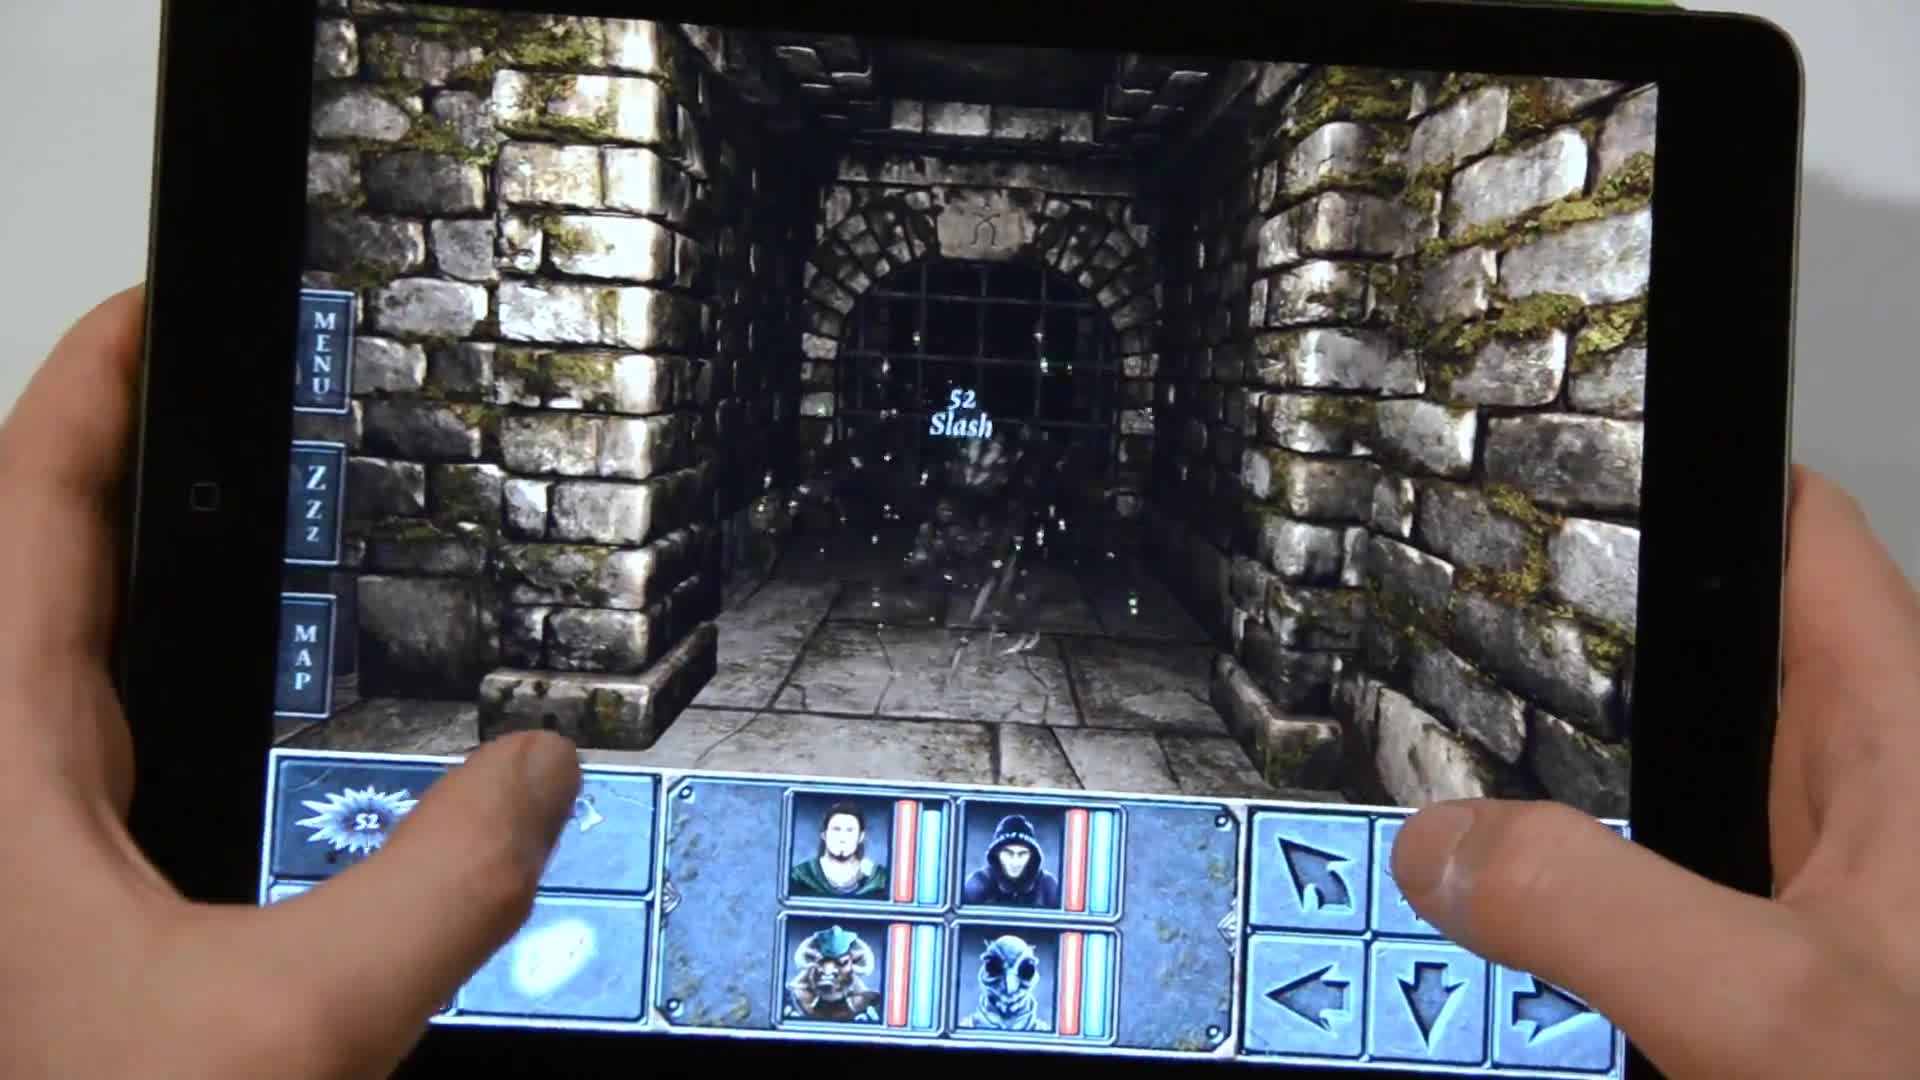 Legend of Grimrock - iPad gameplay first look